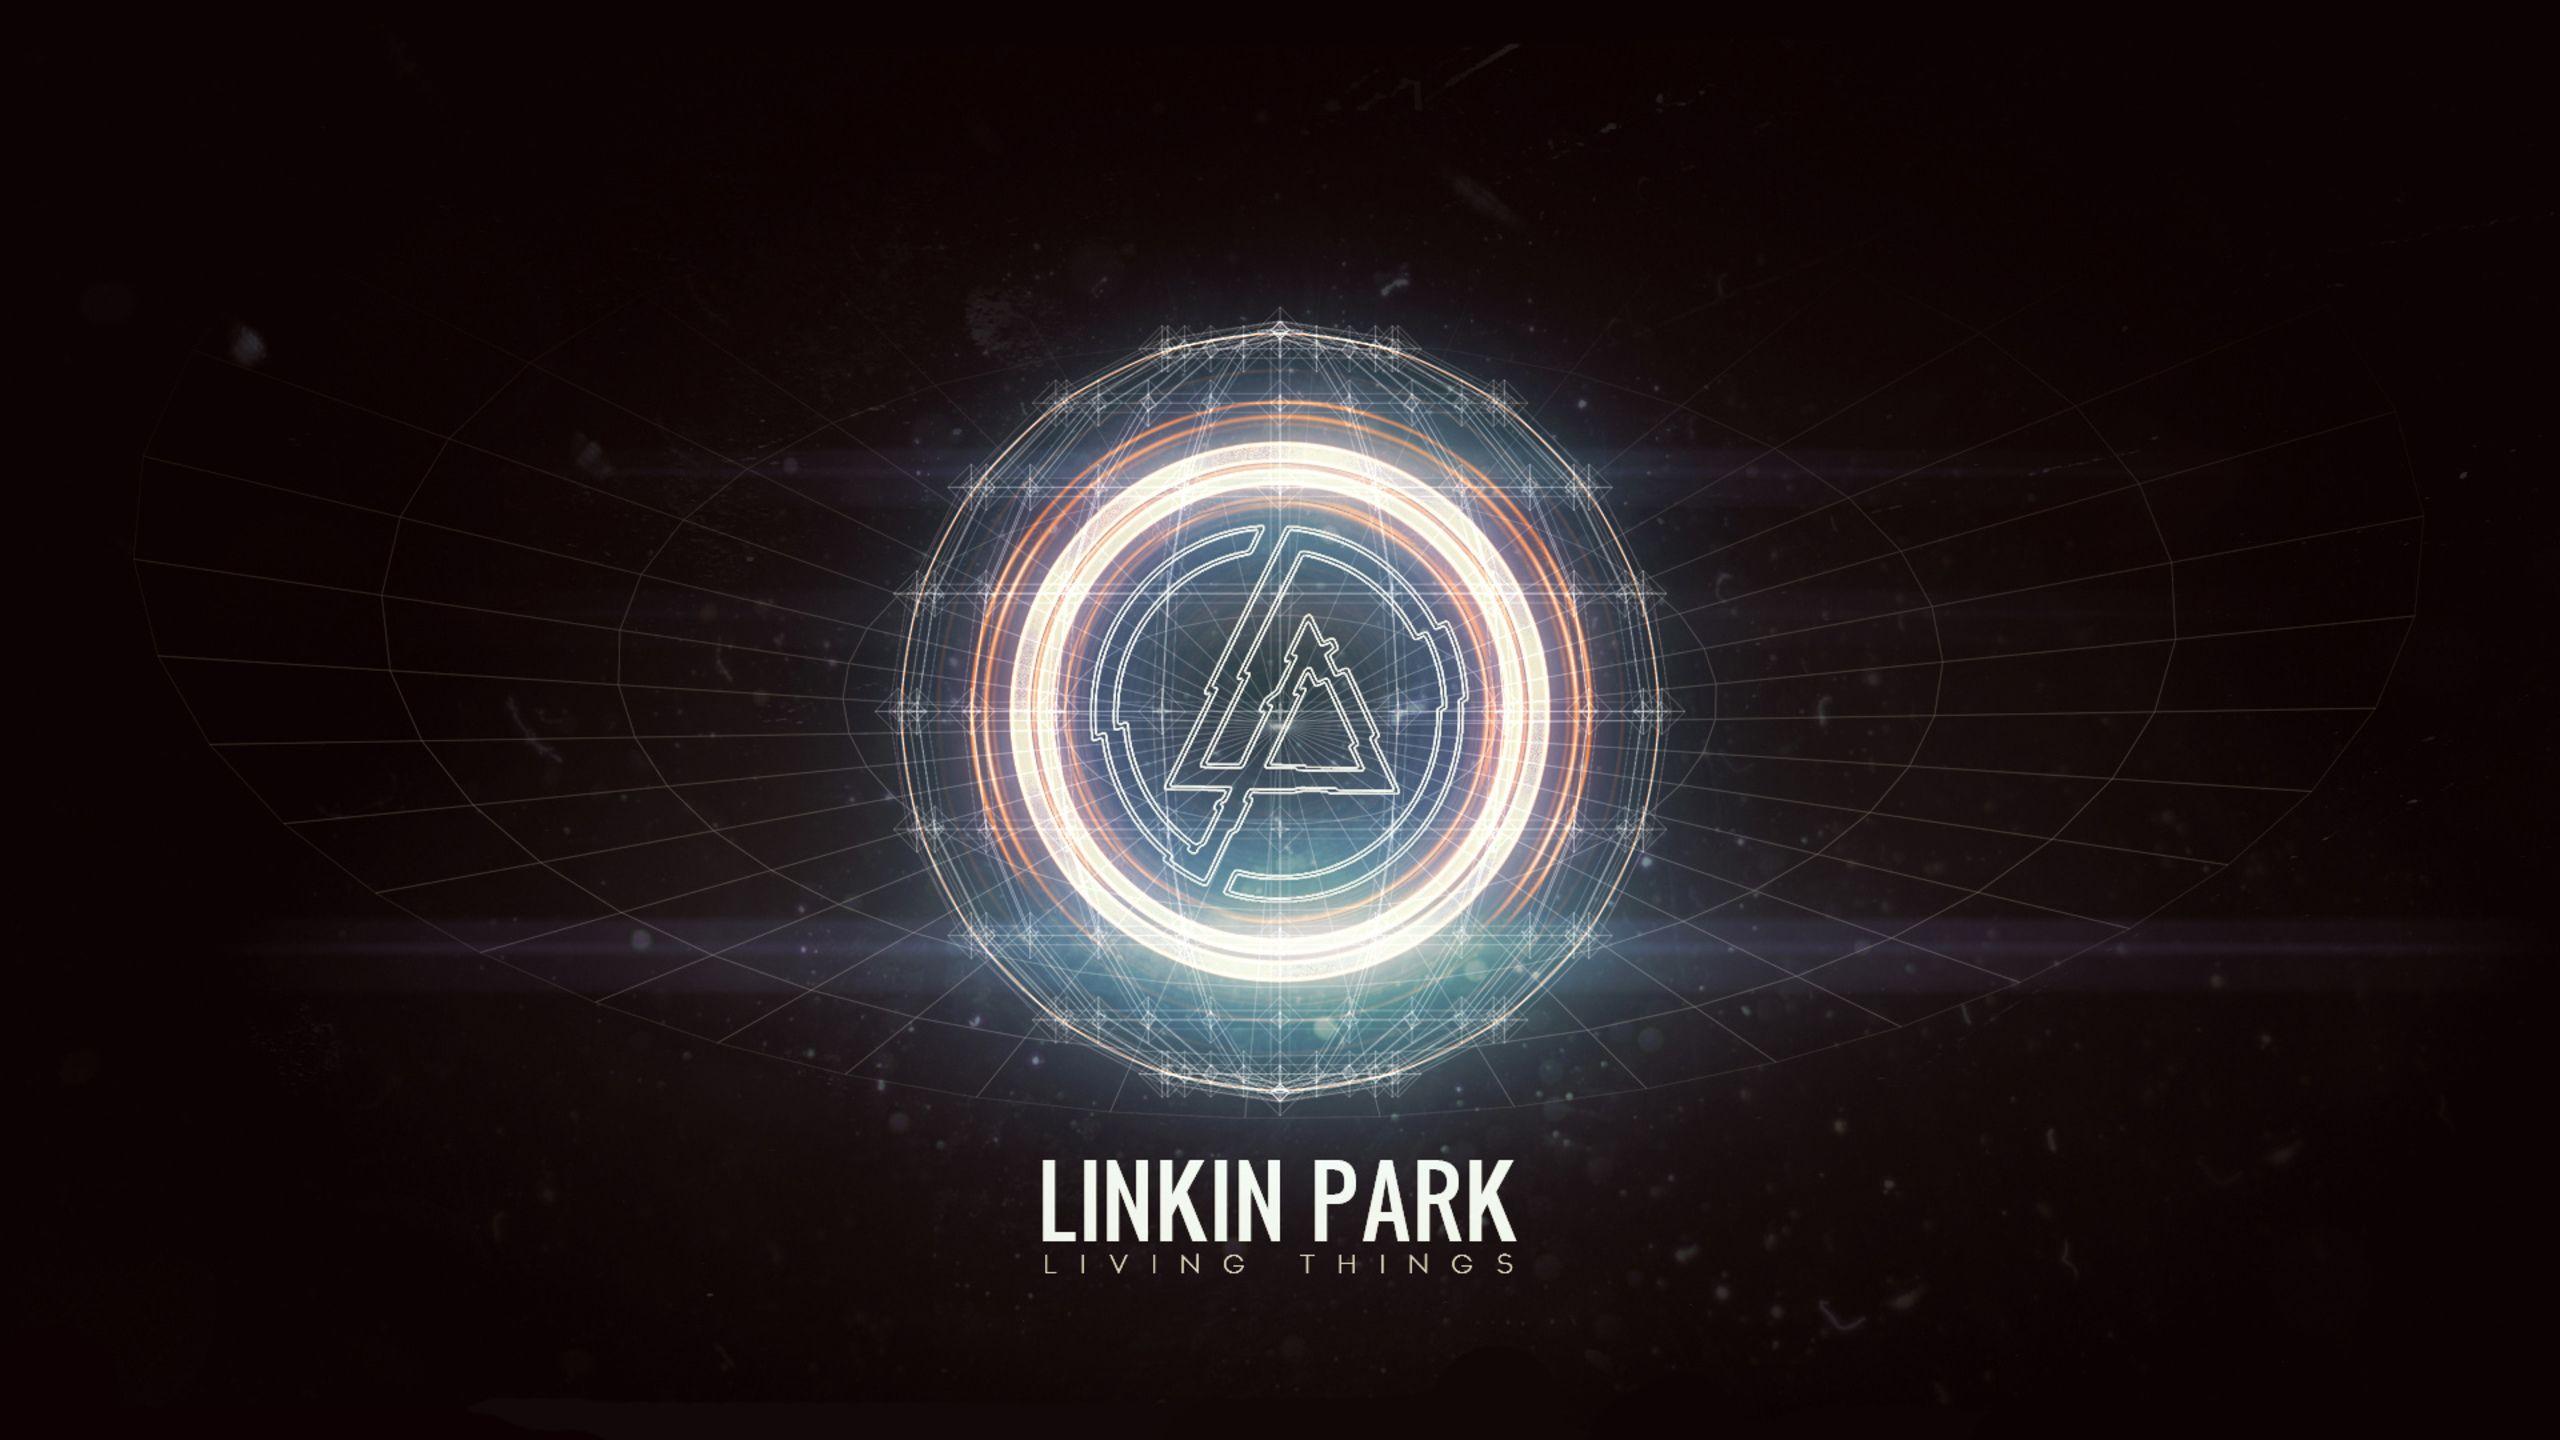 Linkin Park 1440P Resolution HD 4k Wallpaper, Image